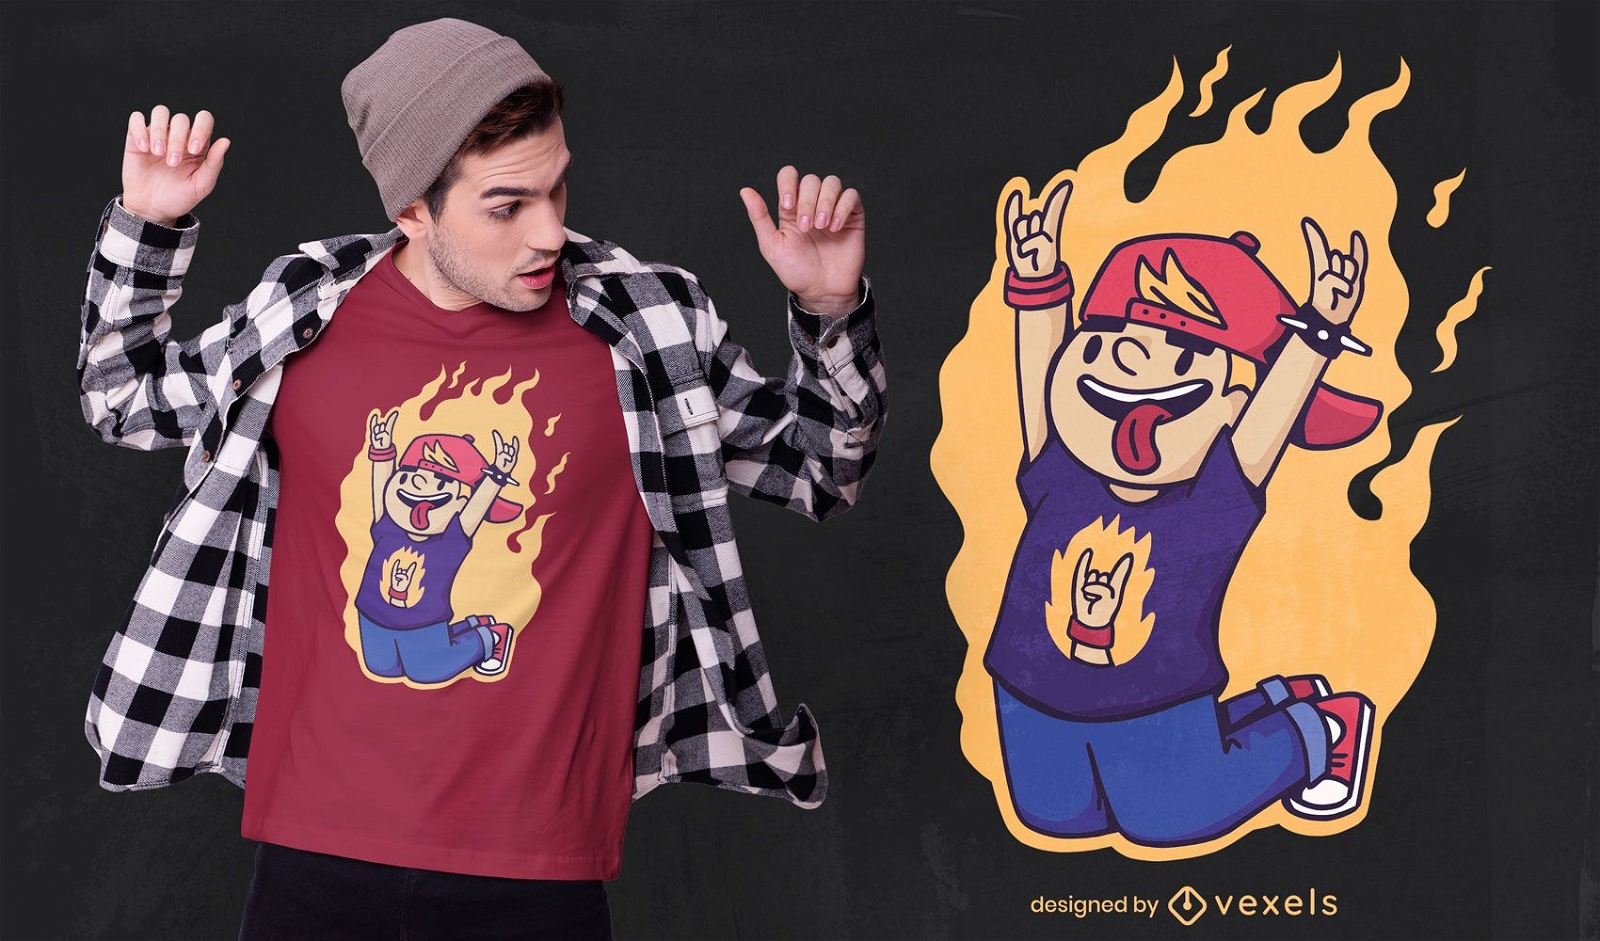 Diseño de camiseta kid rock n roll on fire